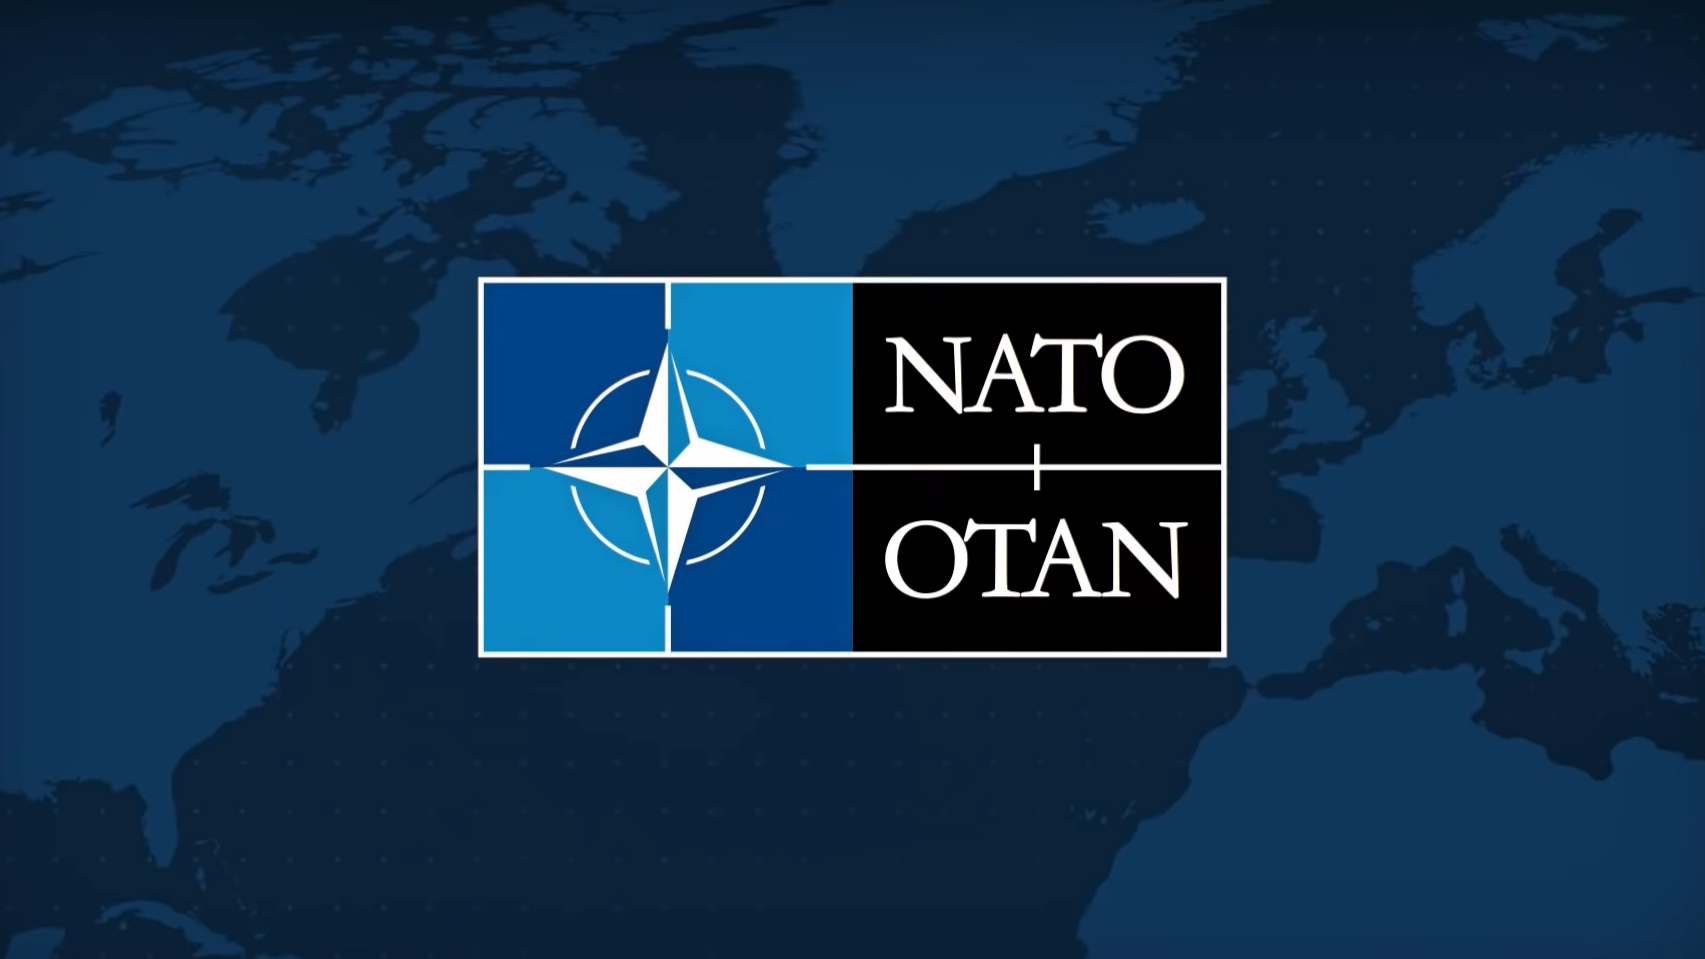 После того, как Россия вышла из договора, НАТО приостановило свое участие в ДОВСЕ